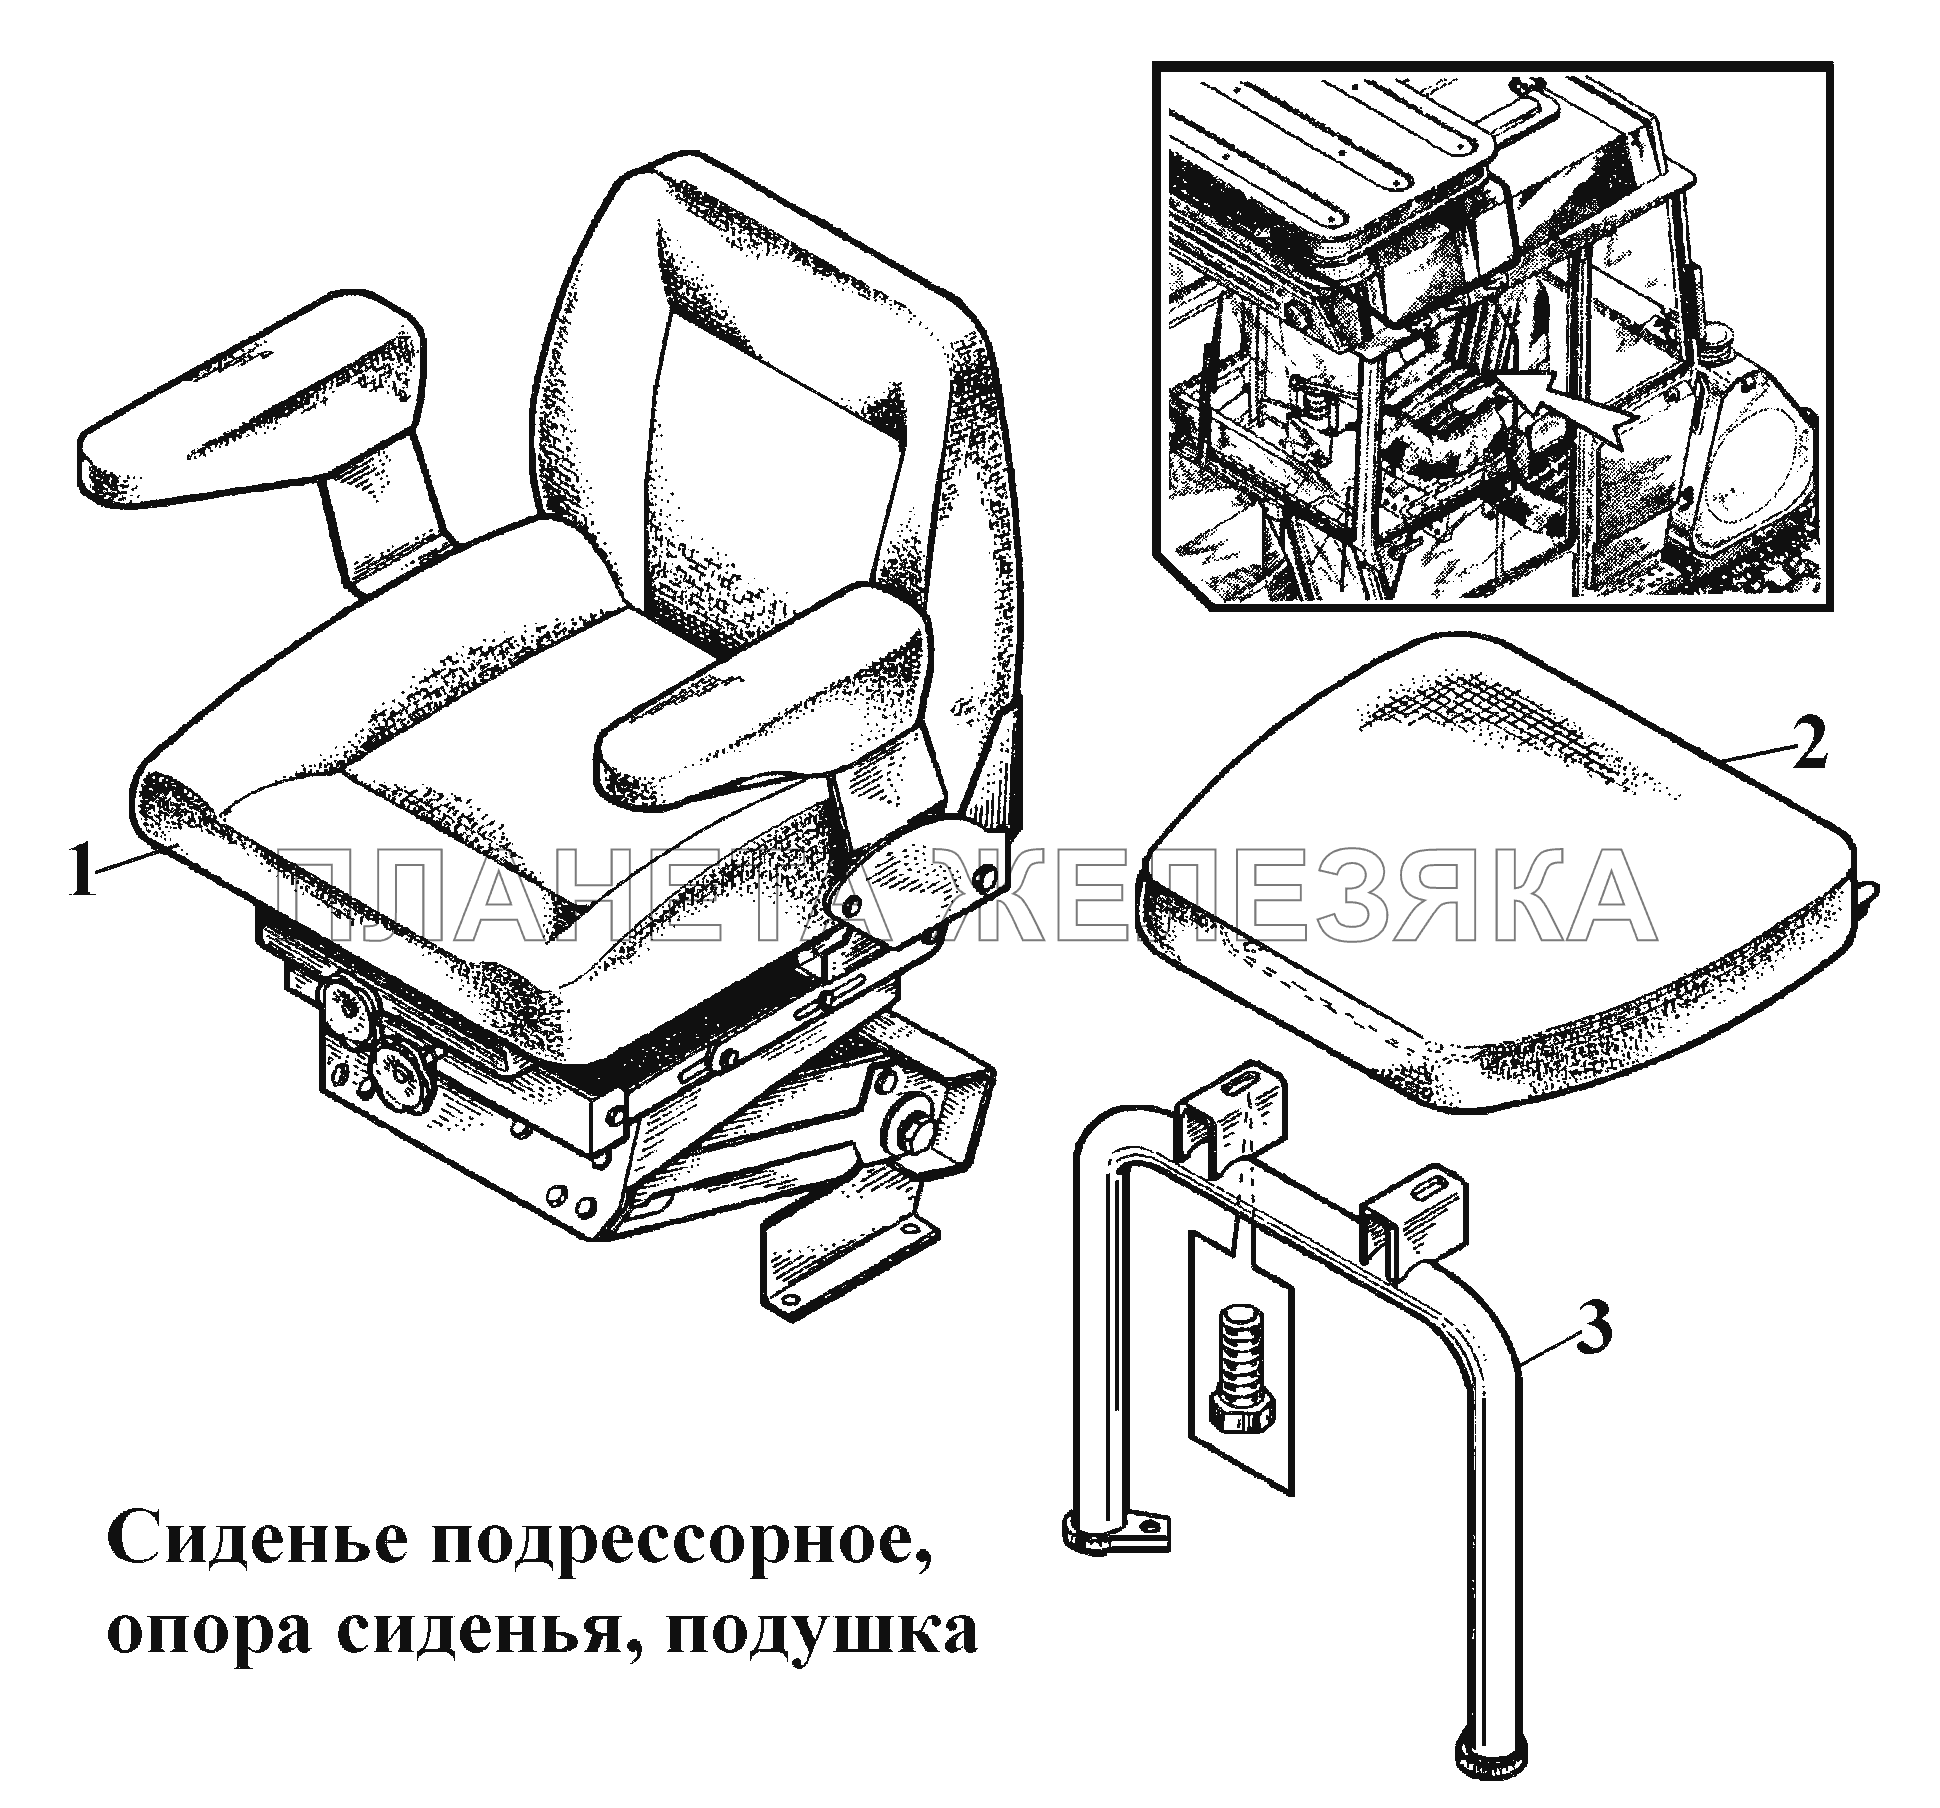 Сиденье подрессорное, опора сиденья, подушка ВТ-100Д